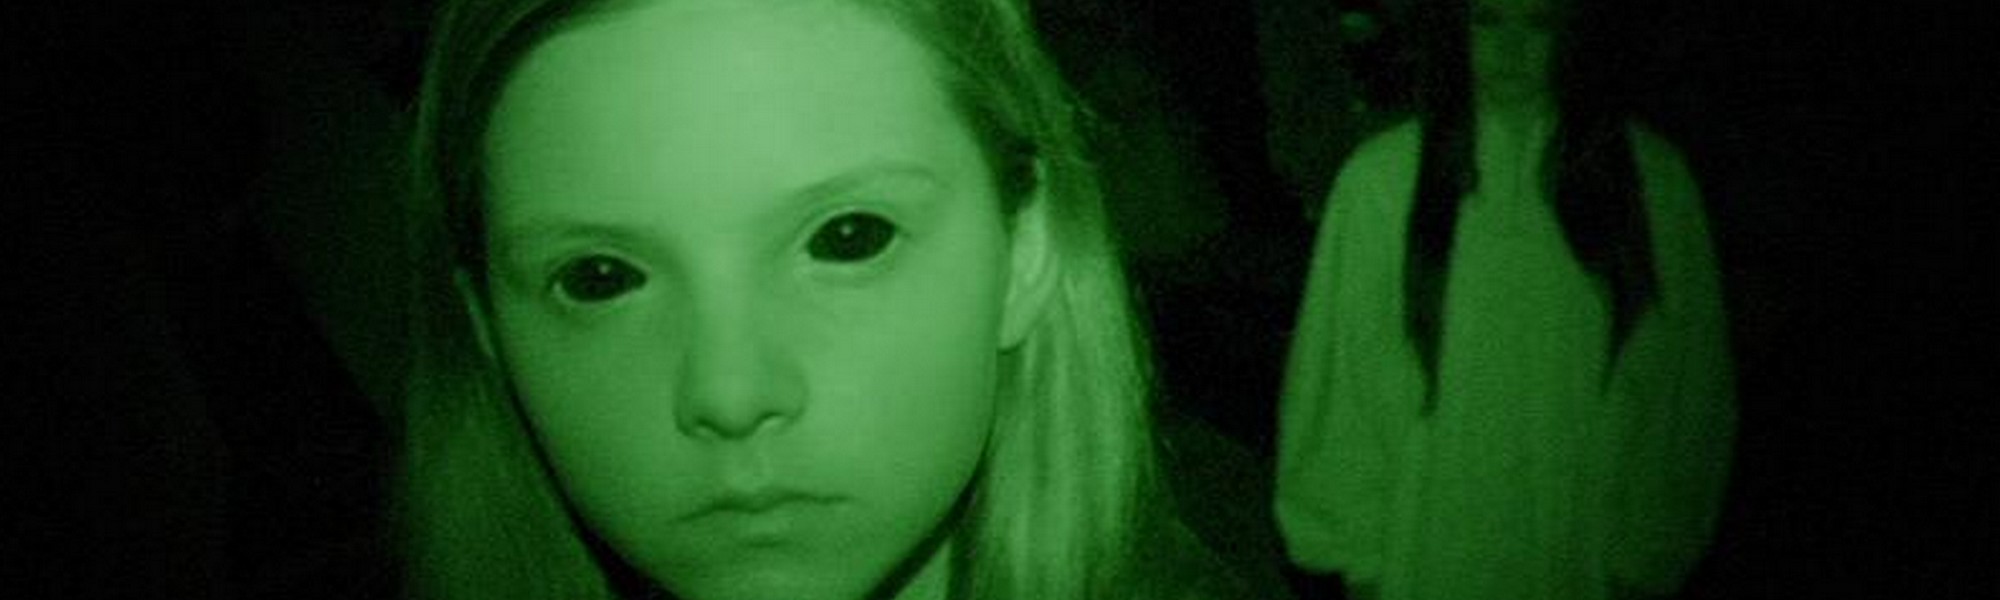 atividade paranormal dimensão fantasma filme completo